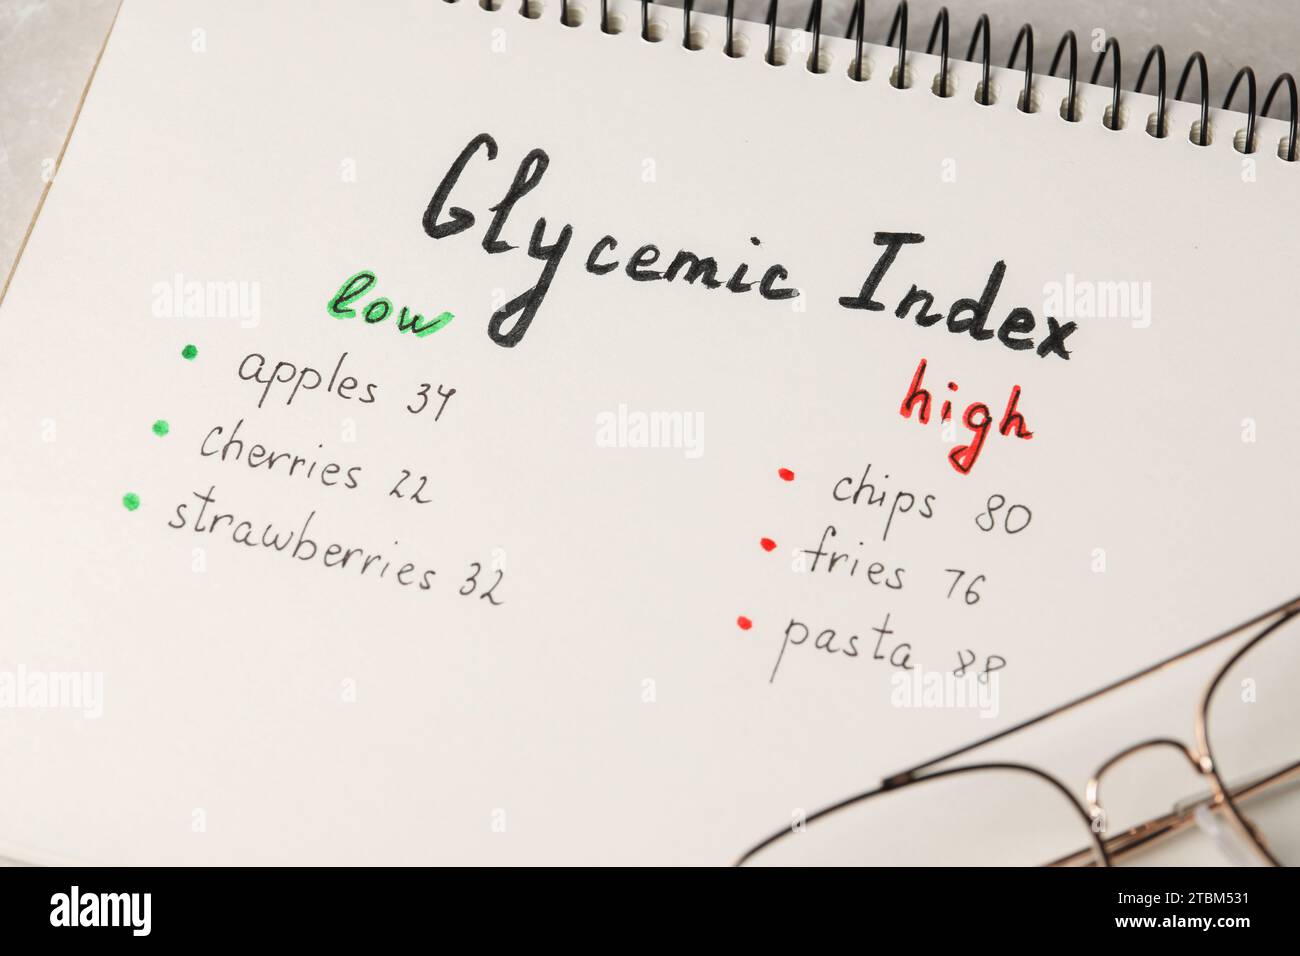 Liste mit Produkten mit niedrigem und hohem glykämischen Index in Notizbuch auf Tabelle, Nahaufnahme Stockfoto